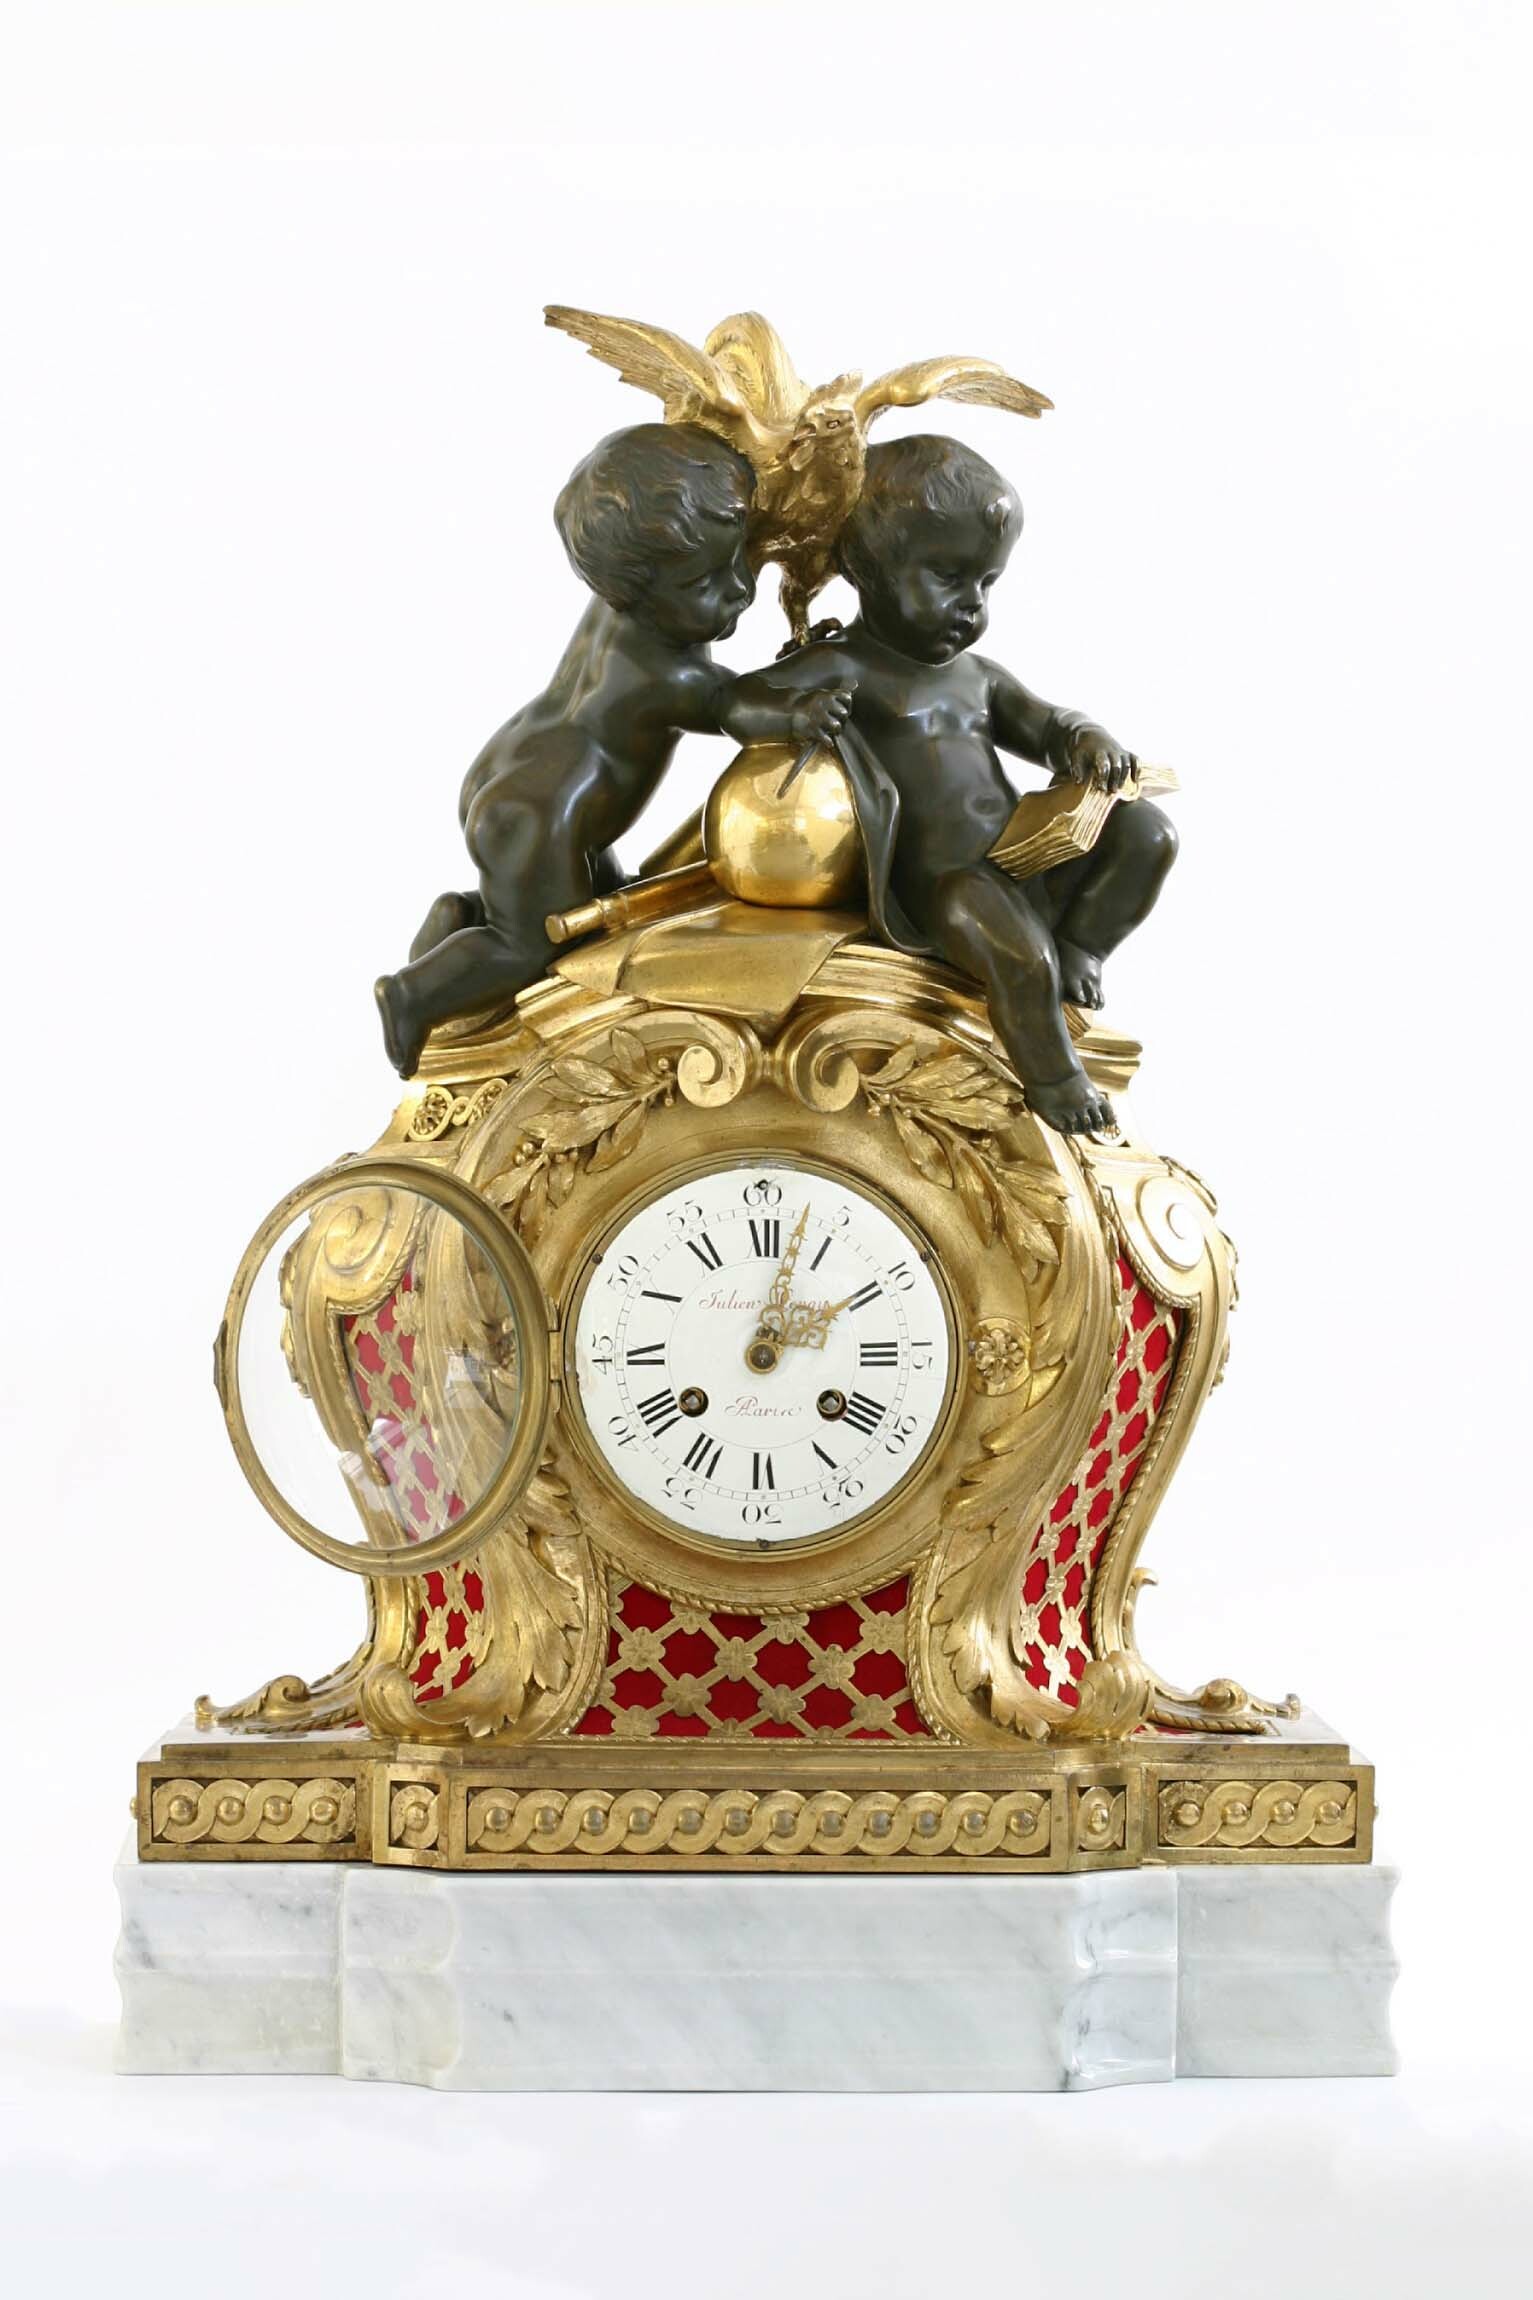 Tischuhr, Julien Leroy, Paris, um 1750, Werk: Samuel Marti und Cie., Montbéliard, um 1850 (Deutsches Uhrenmuseum CC BY-SA)